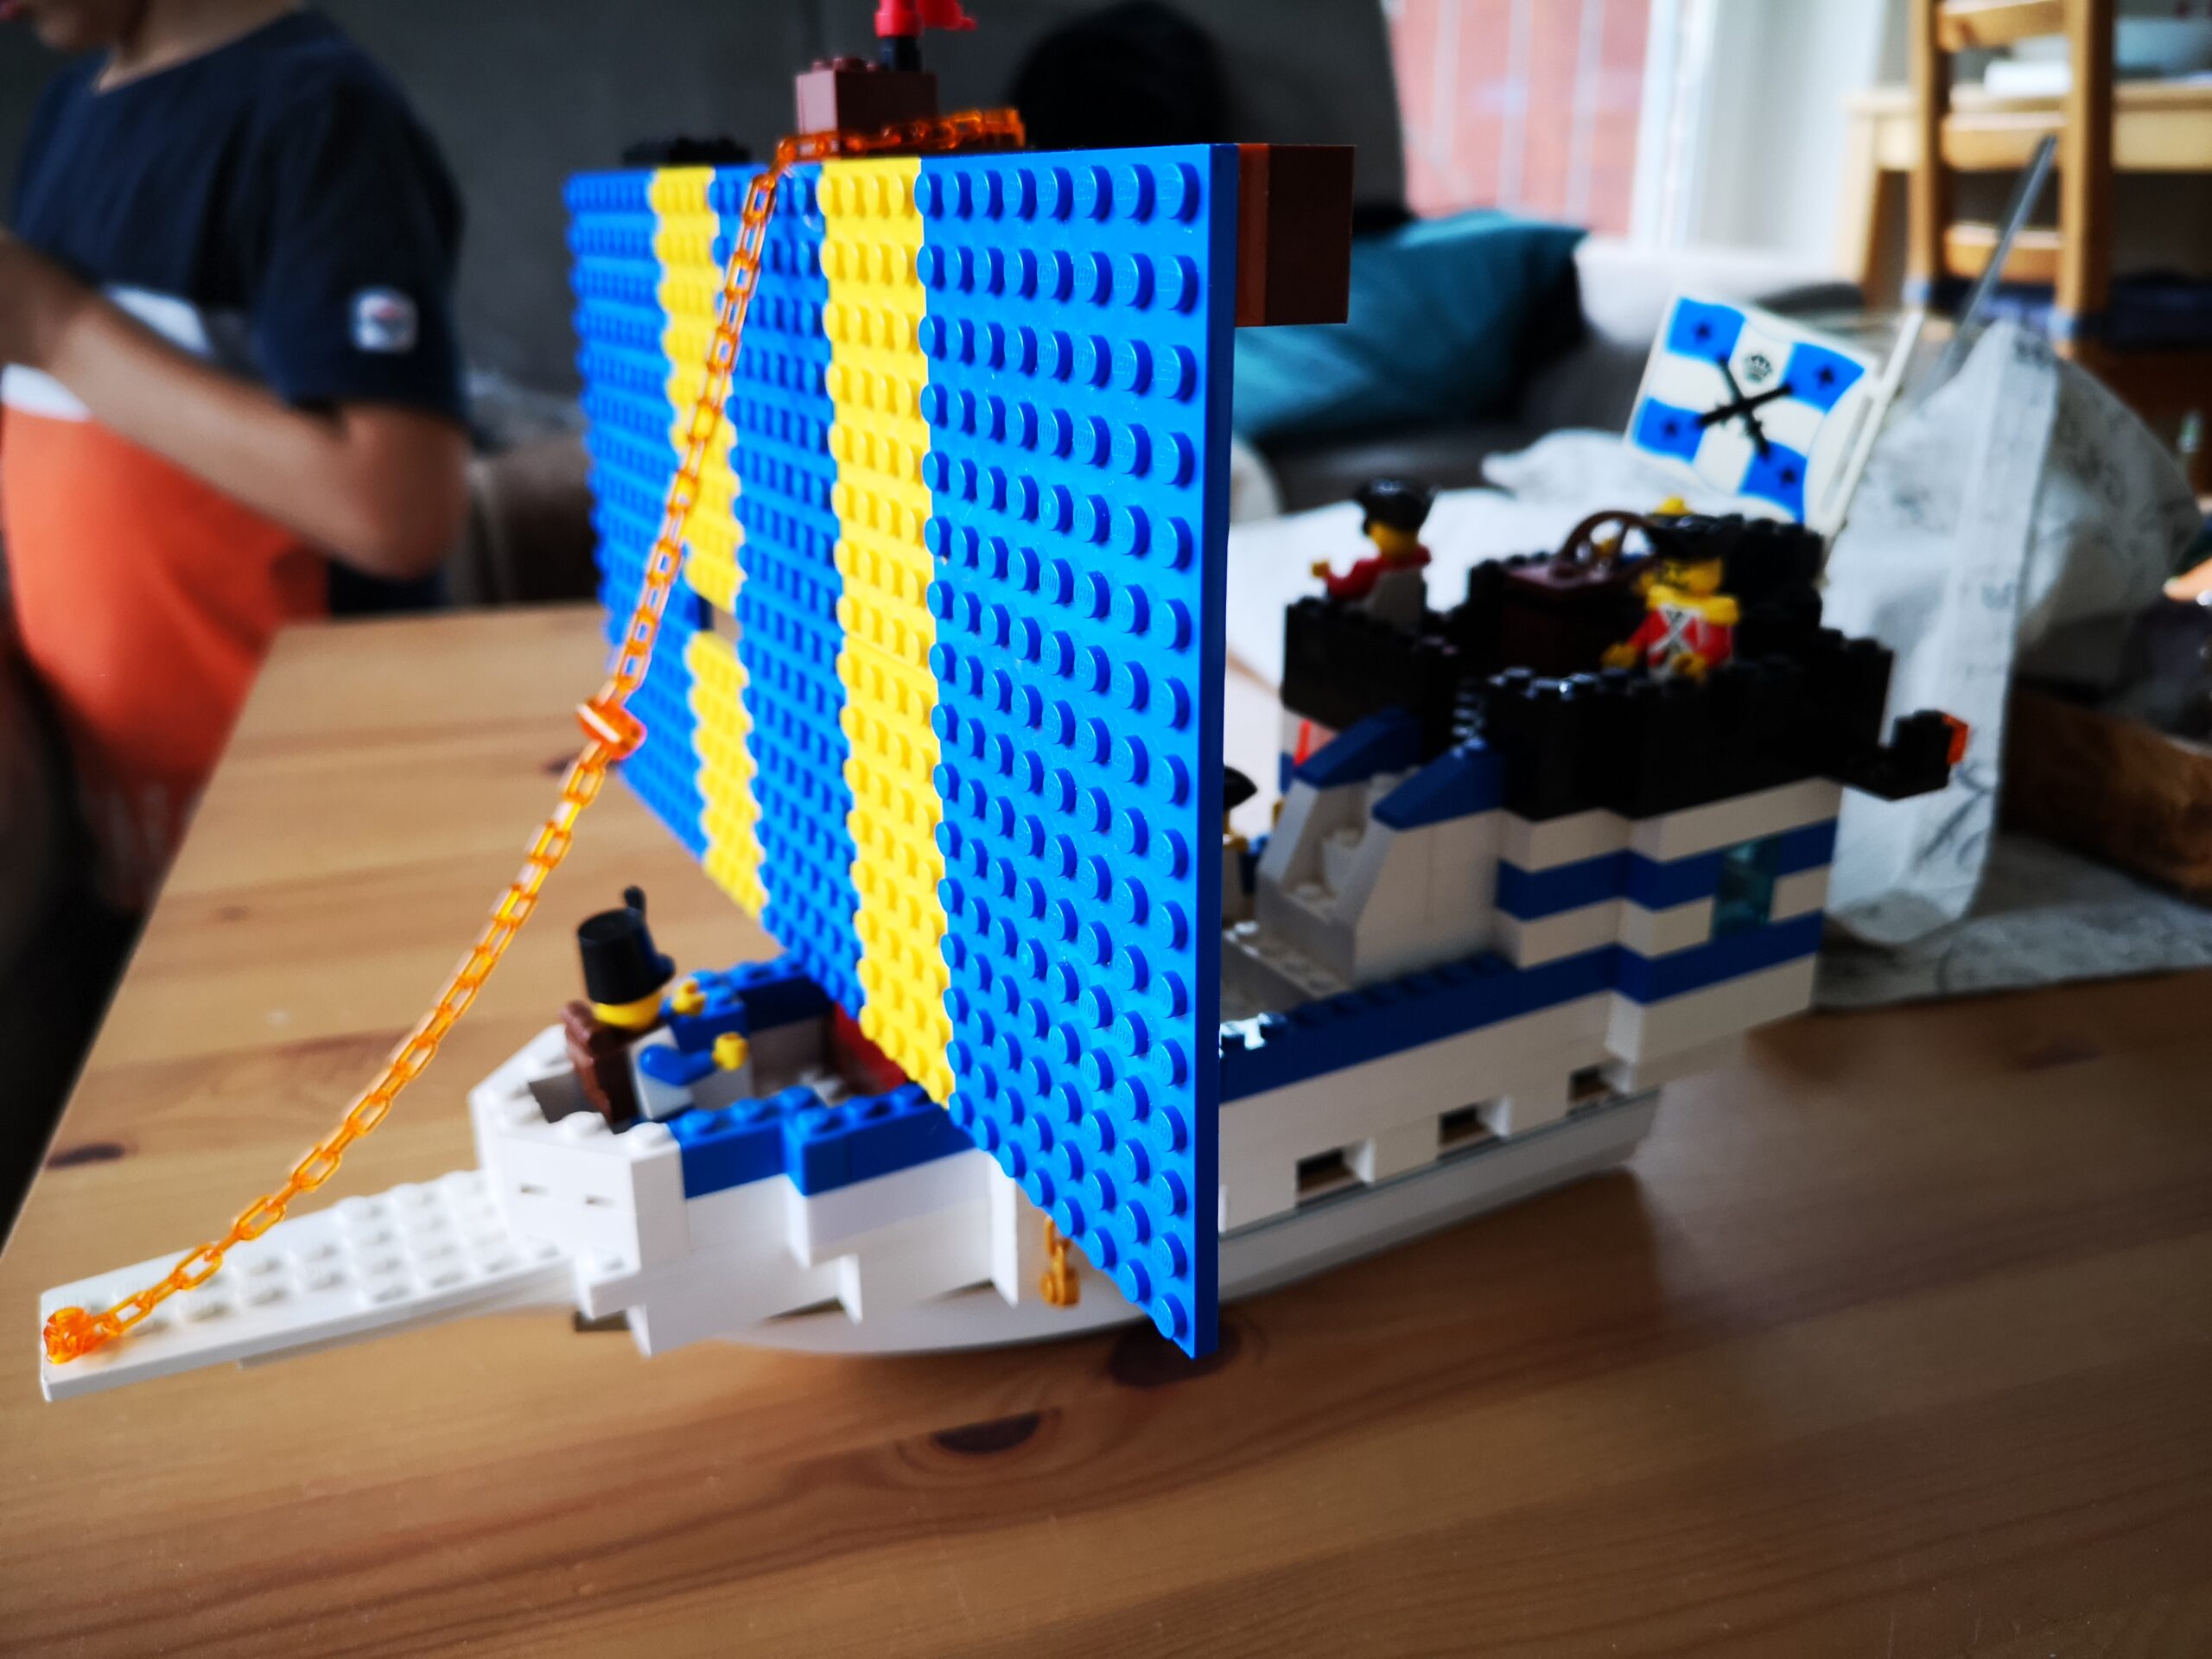 Lego Ship